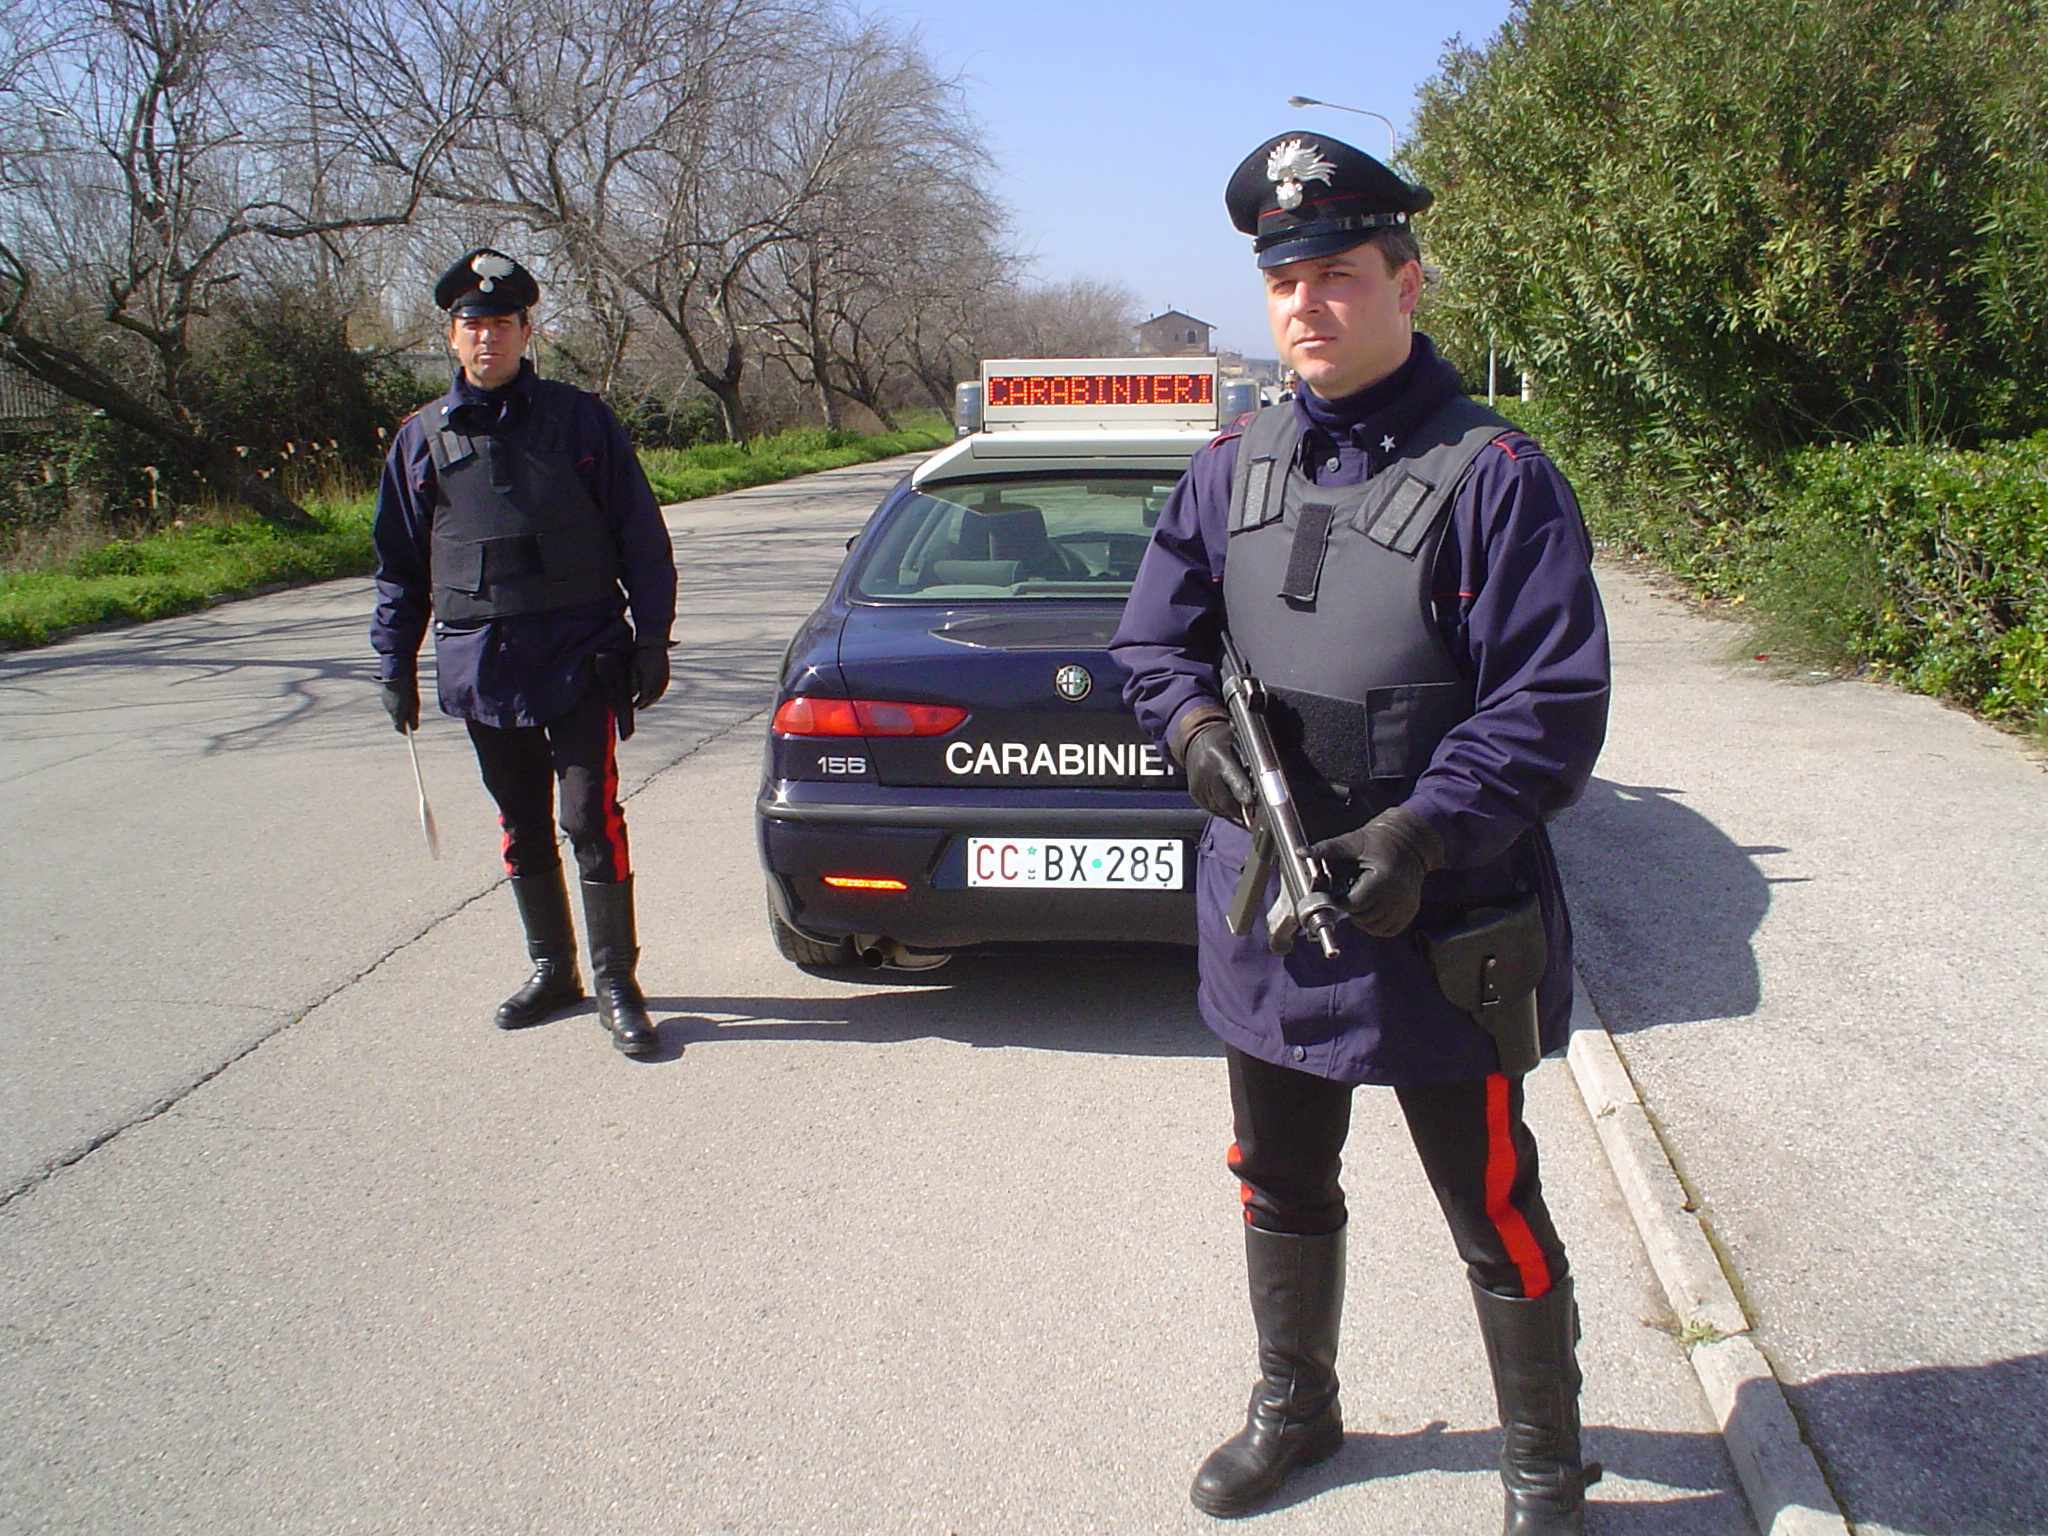 Elicotteri e pattuglie dei carabinieri per intensificare i controlli sotto Pasqua, multati 5 ragazzi che preparavano carne alla brace in montagna a Tagliacozzo "beccati" decine di trasgressori